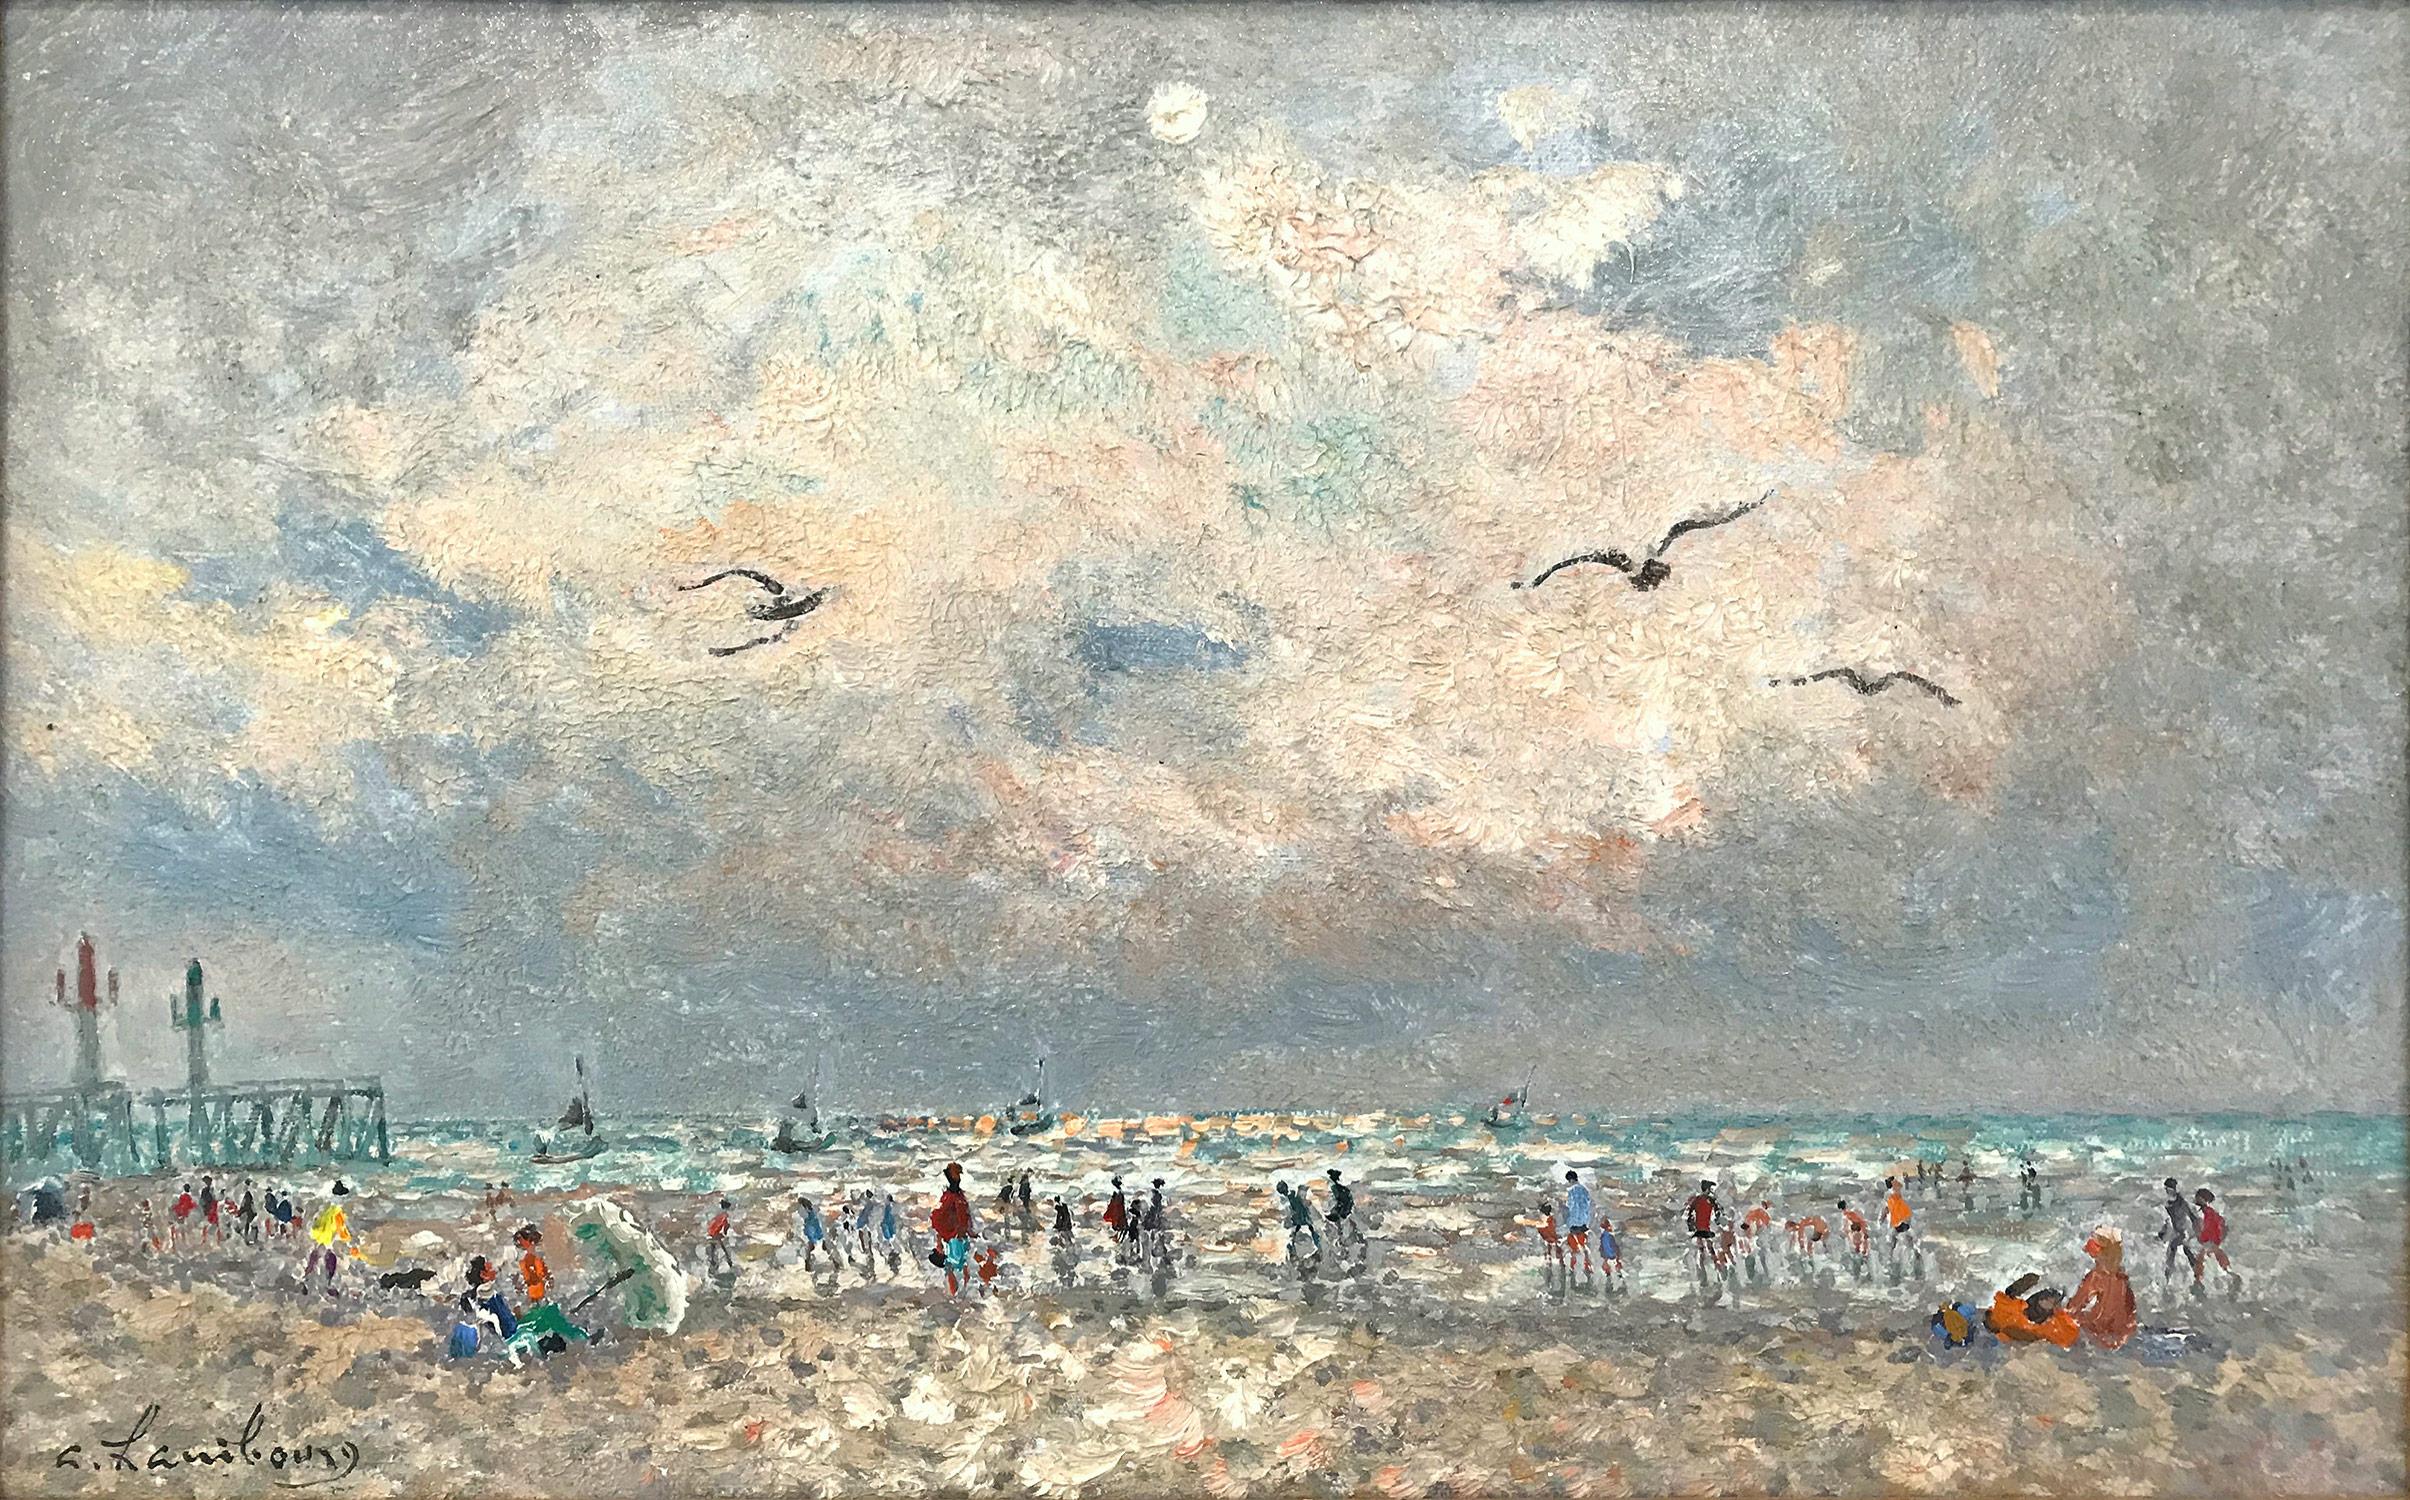 Peinture à l'huile sur toile post-impressionniste française « Scène de mer avec personnages » - Painting de Andre Hambourg